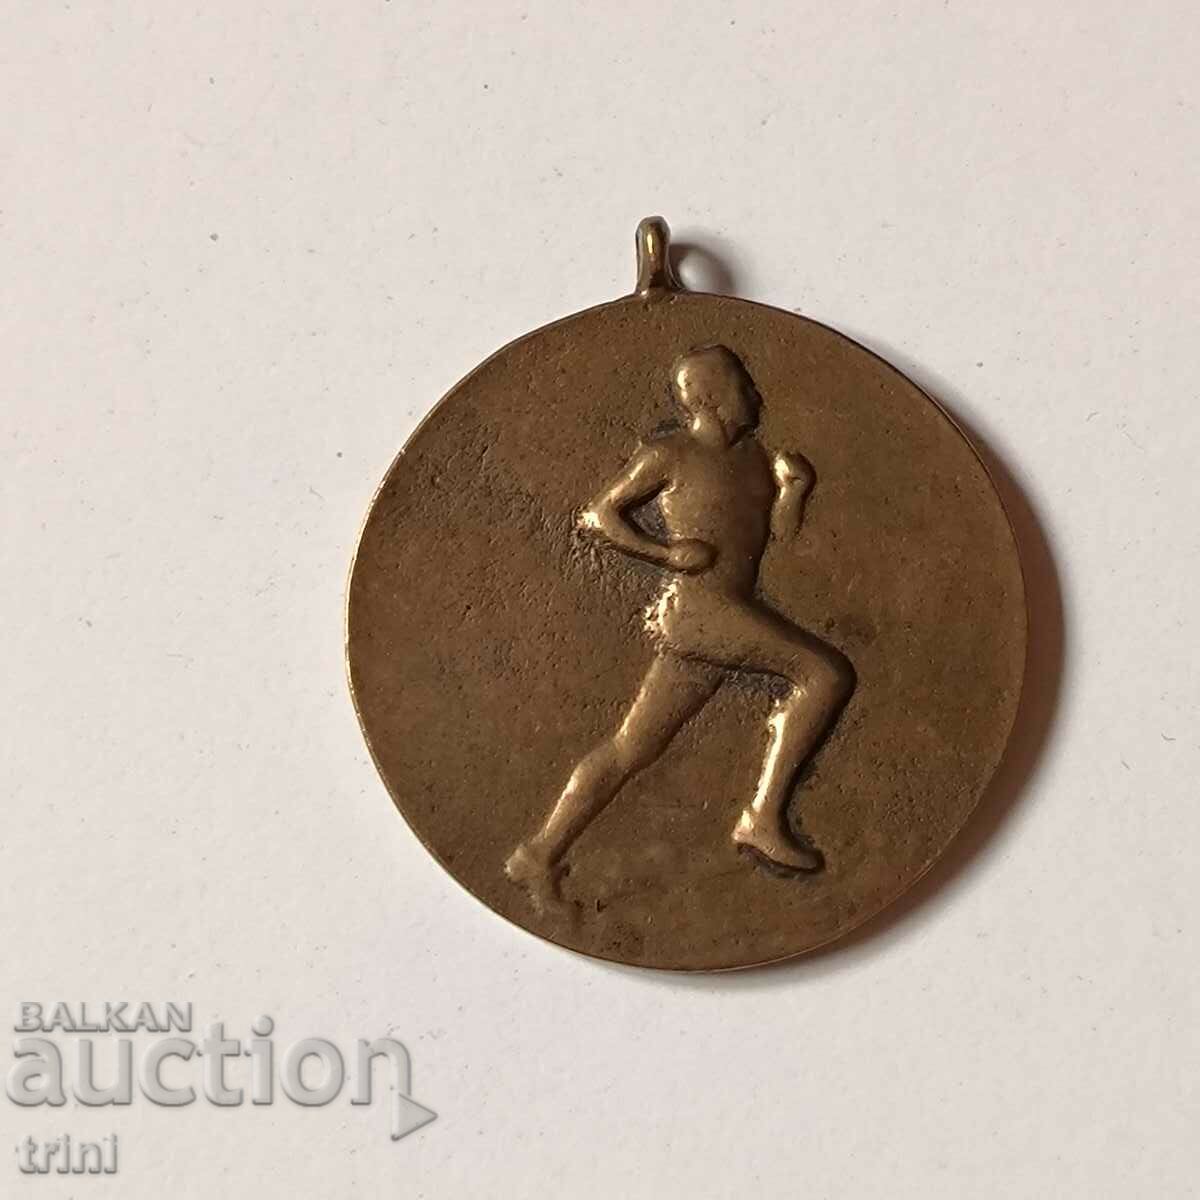 Спортен медал 1951 година - бягане